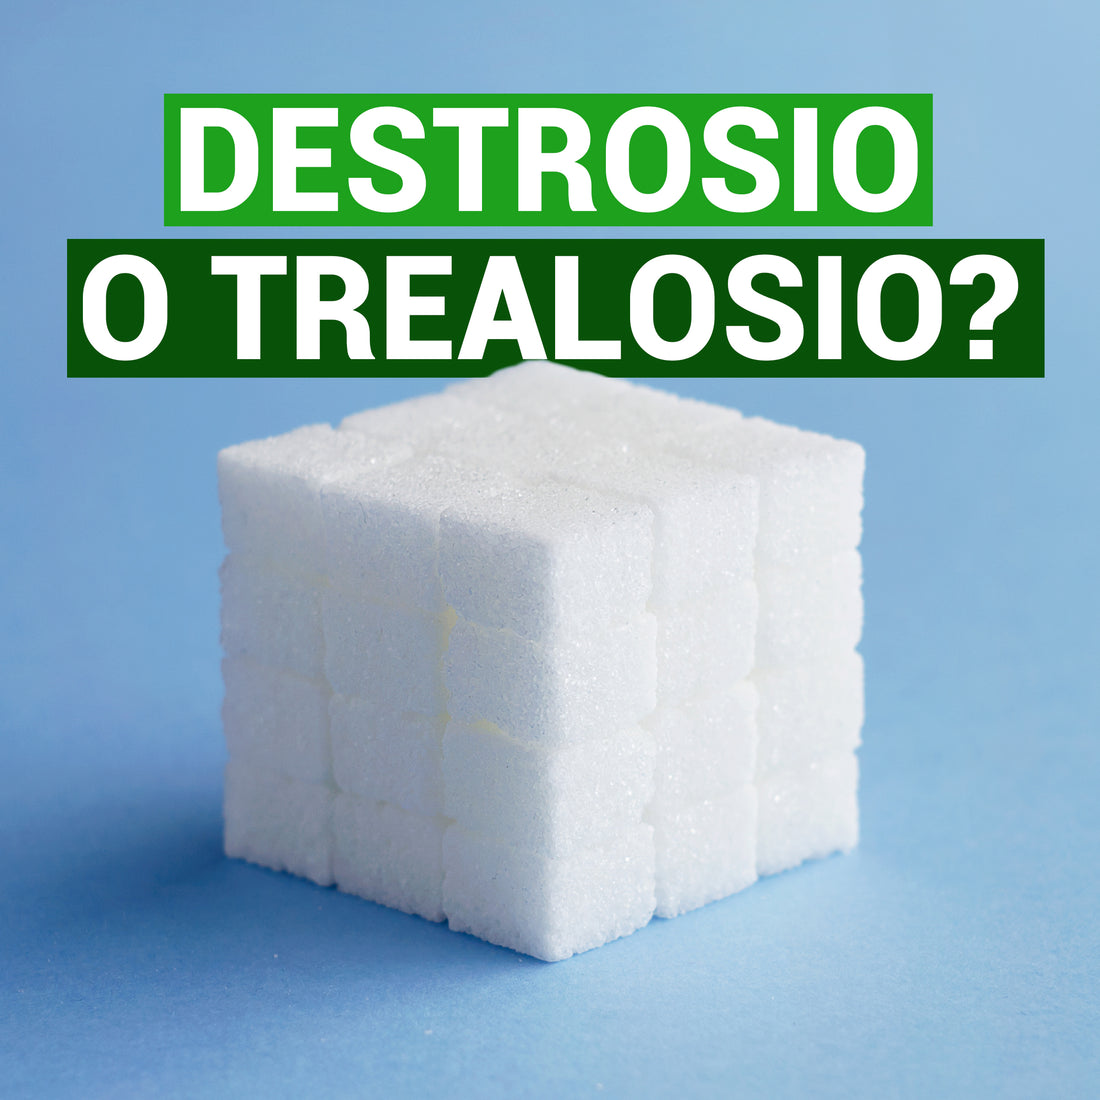 Destrosio e Trealosio: due zuccheri molto diversi per lavori anche simili